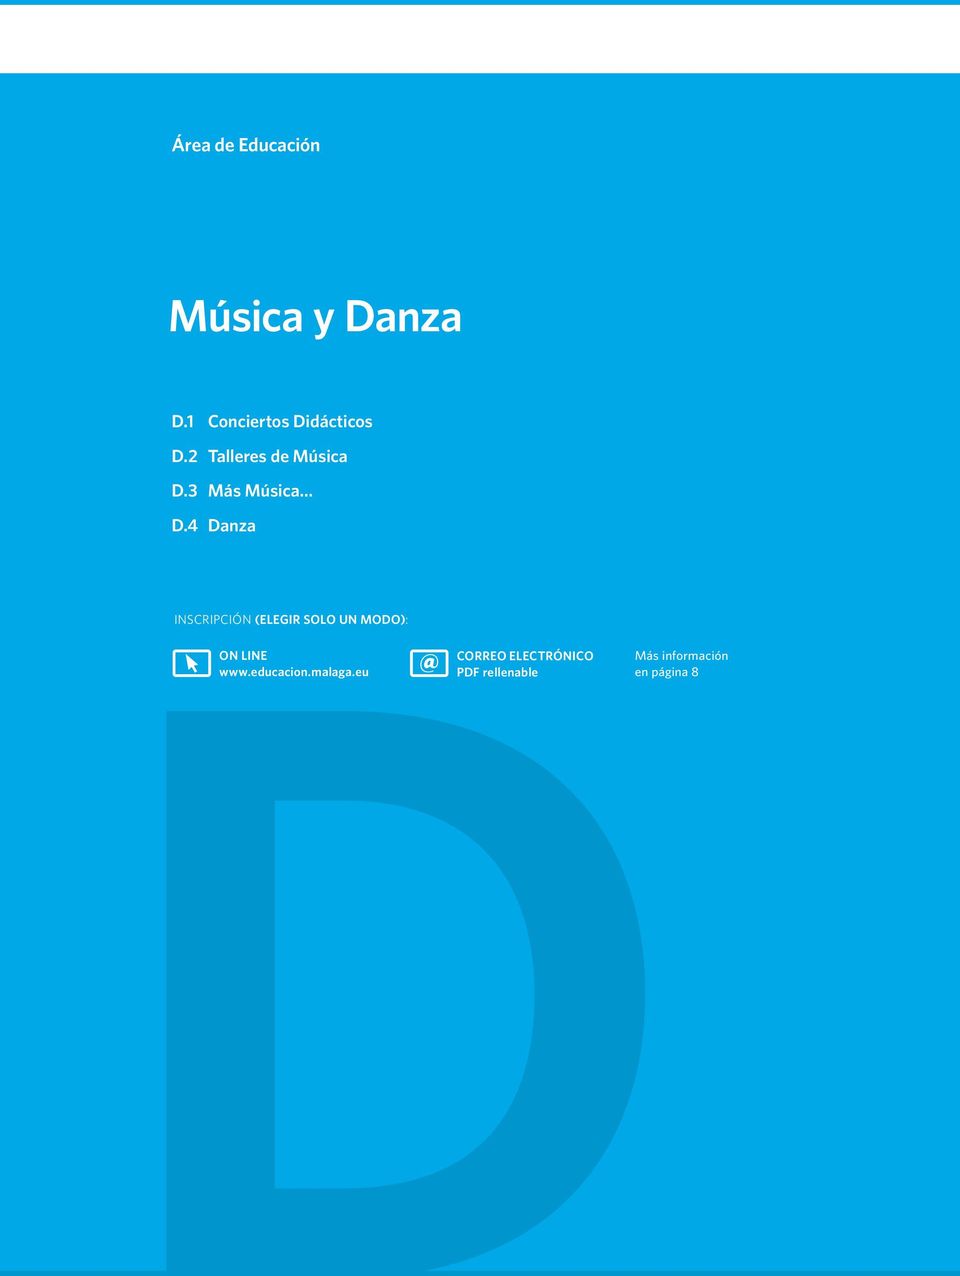 3 Más Música D.4 Danza DON LINE www.educacion.malaga.